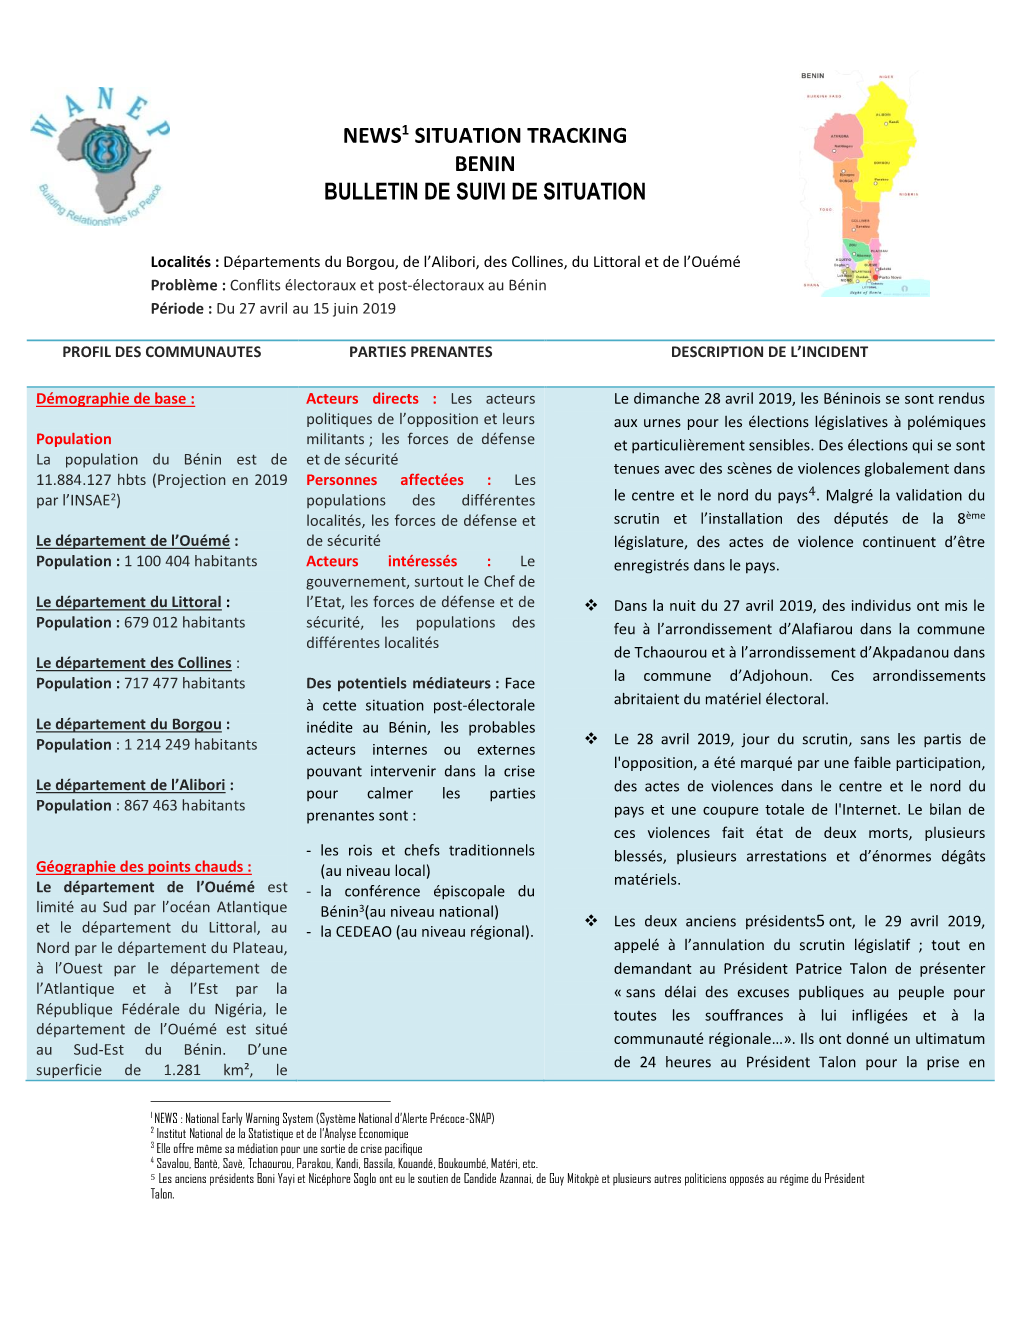 News1 Situation Tracking Benin Bulletin De Suivi De Situation